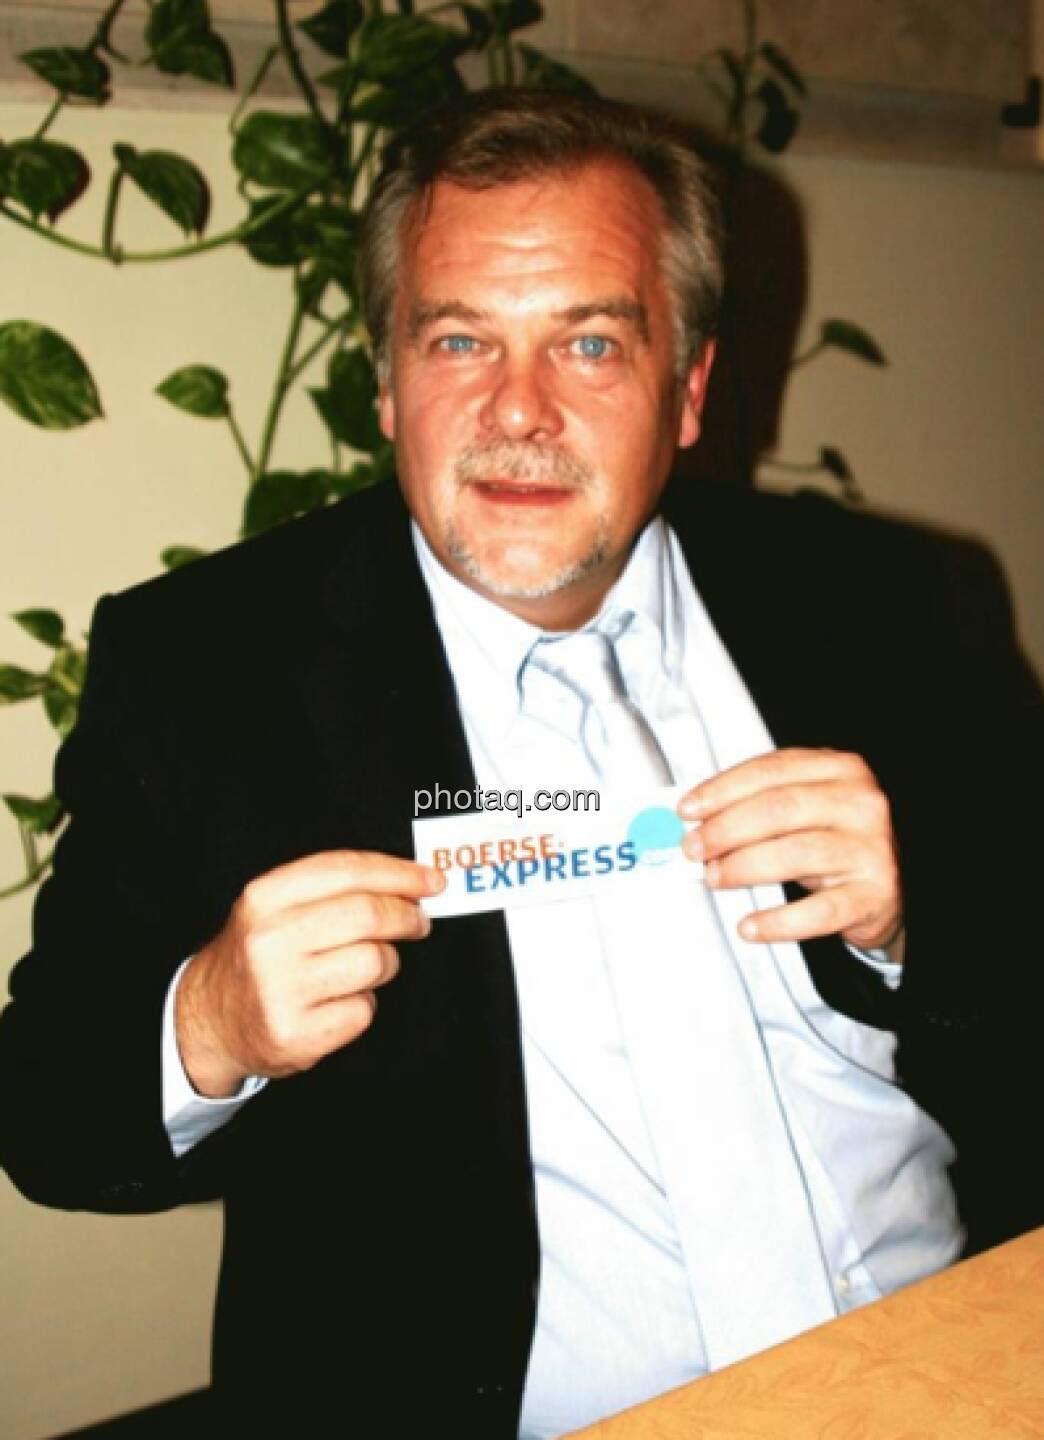 Mike Lielacher, Investor (26. April) - finanzmarktfoto.at wünscht alles Gute!